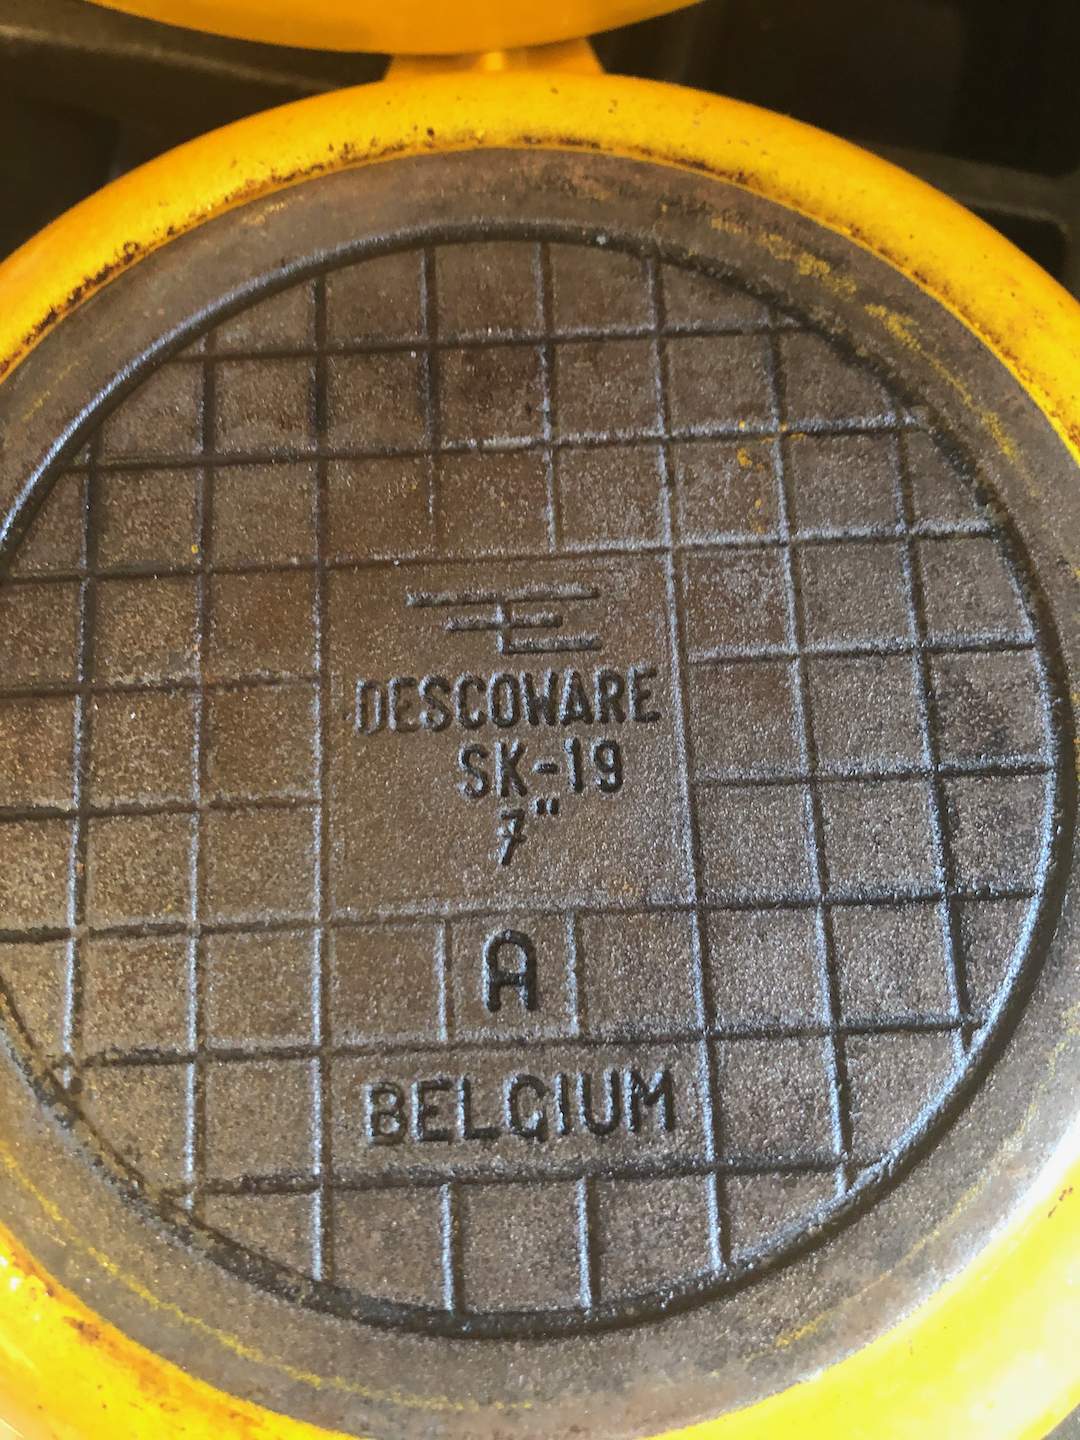 Descoware Yellow Cast Iron Dutch Oven Made in Belgium, Vintage 2